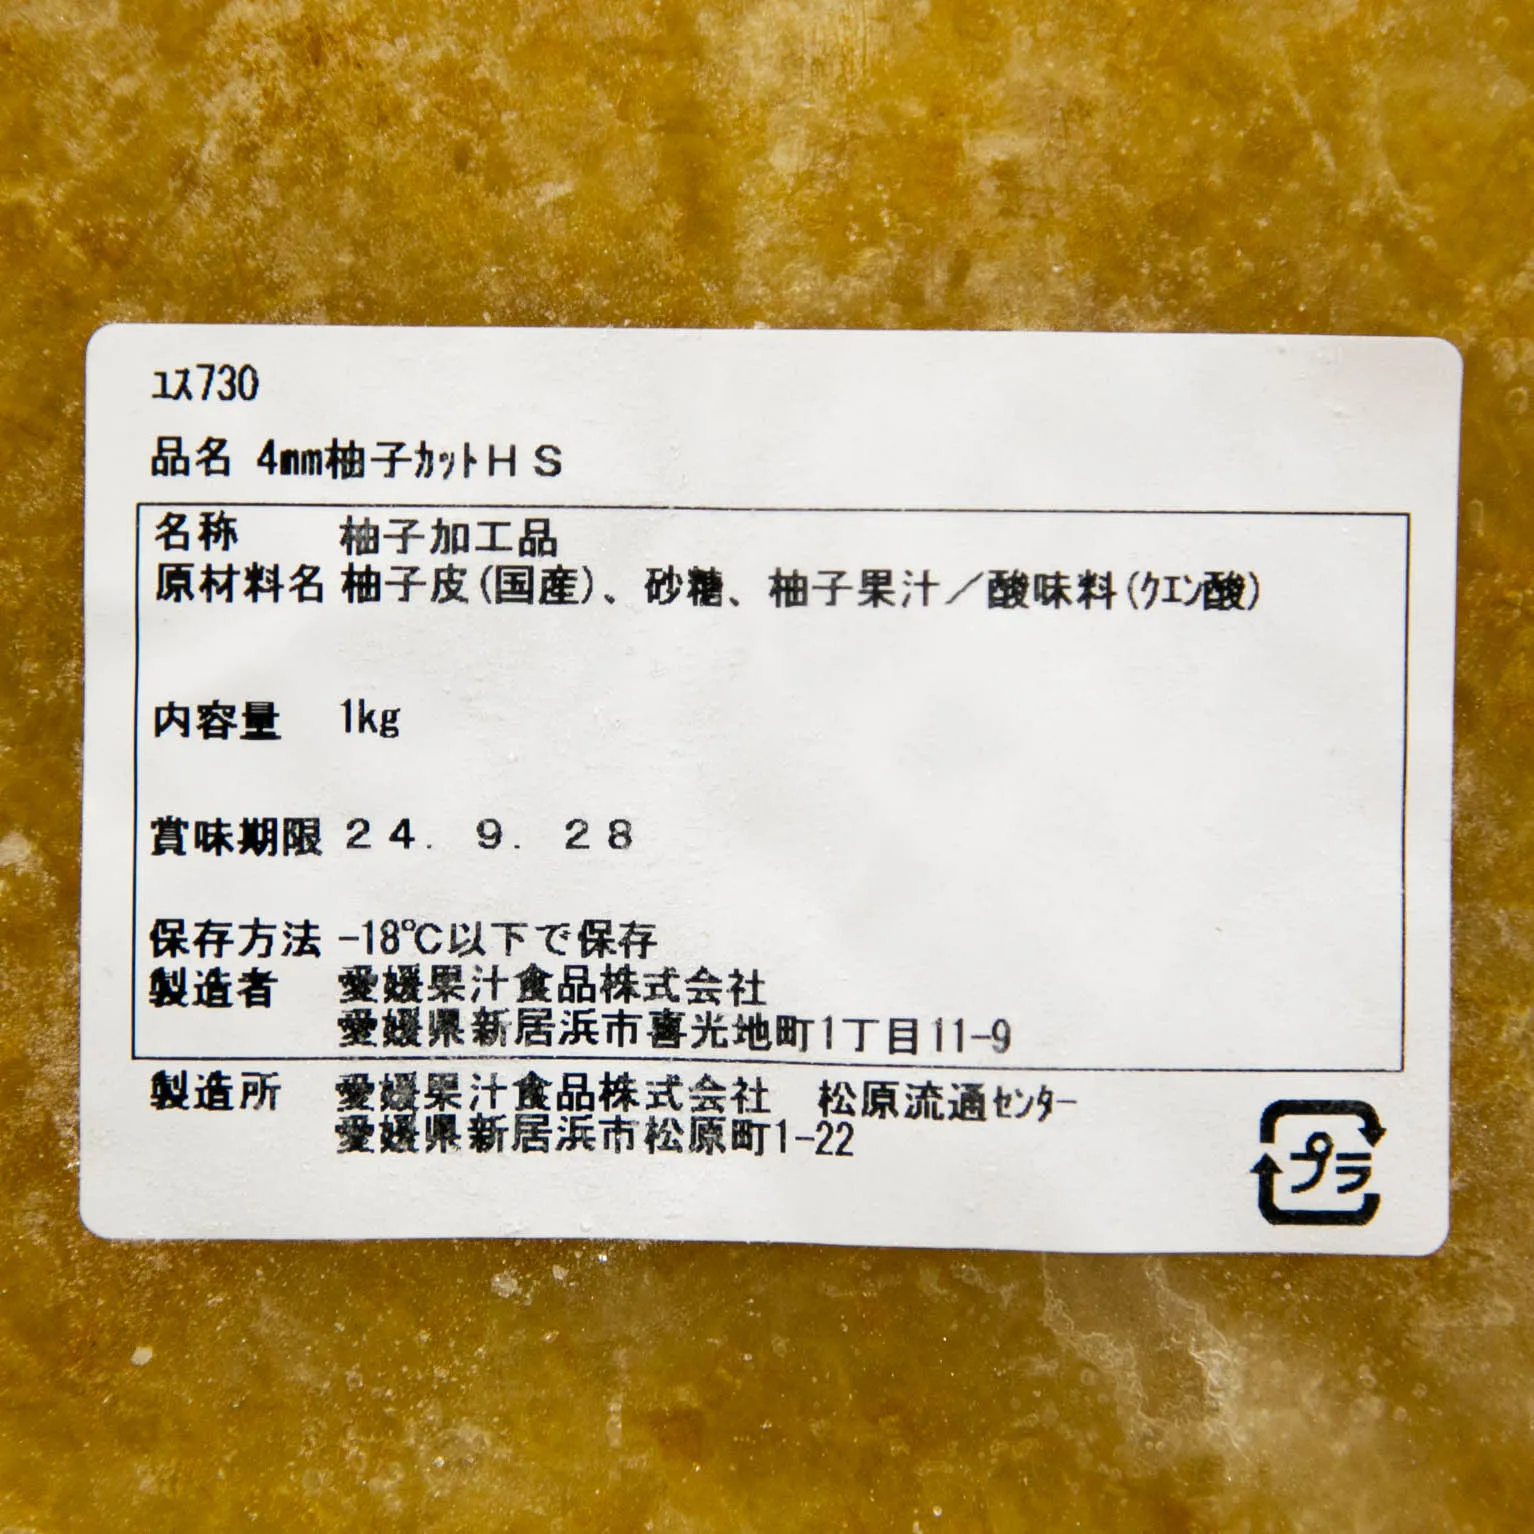 4mm柚子カットHS 1